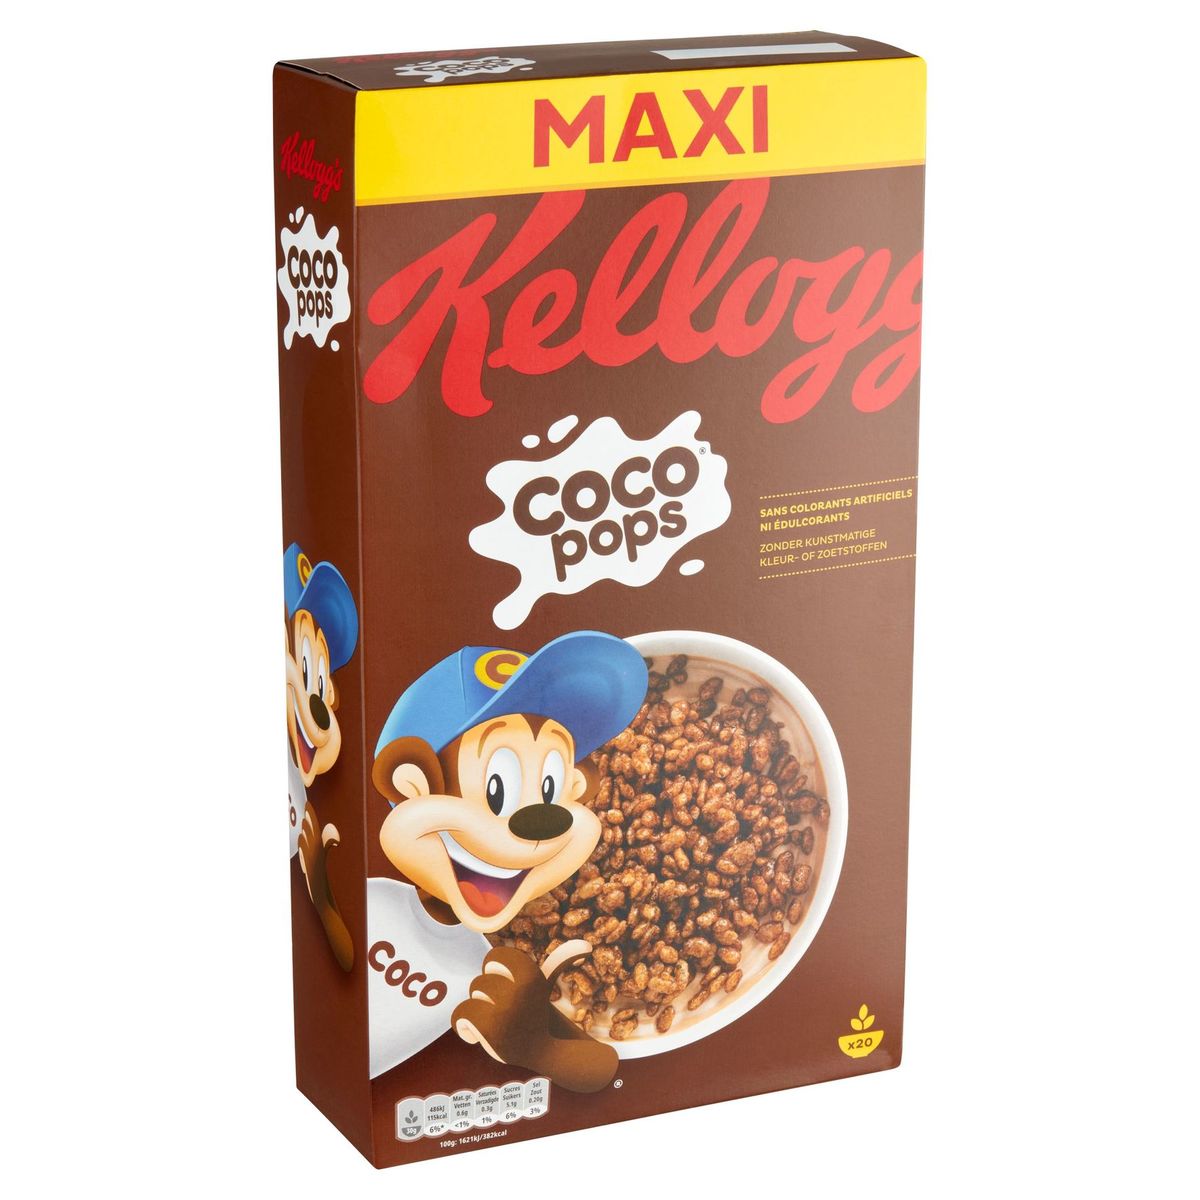 Kellogg's Coco Pops Maxi 600 g